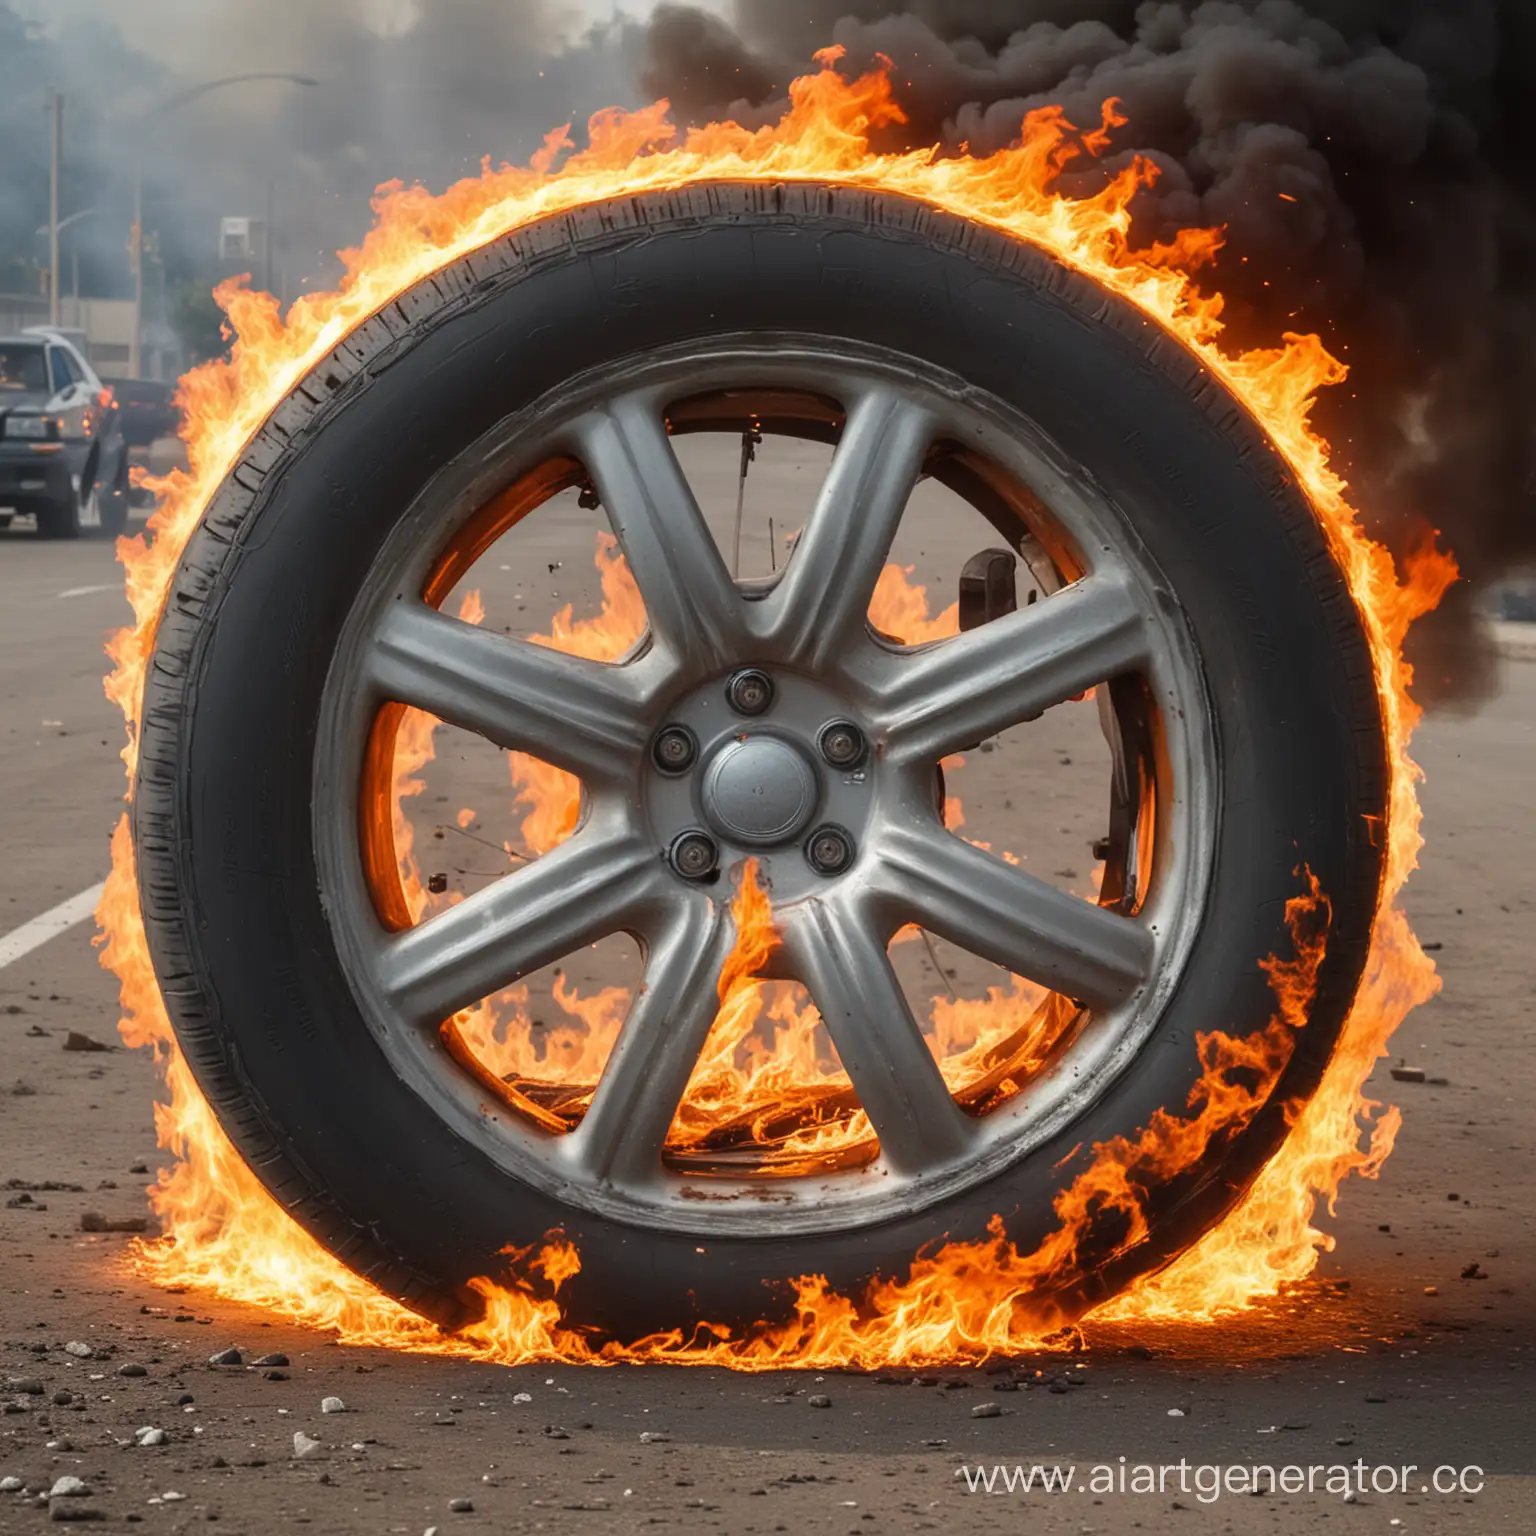 Fiery-Automobile-Wheel-Enveloped-in-Flames